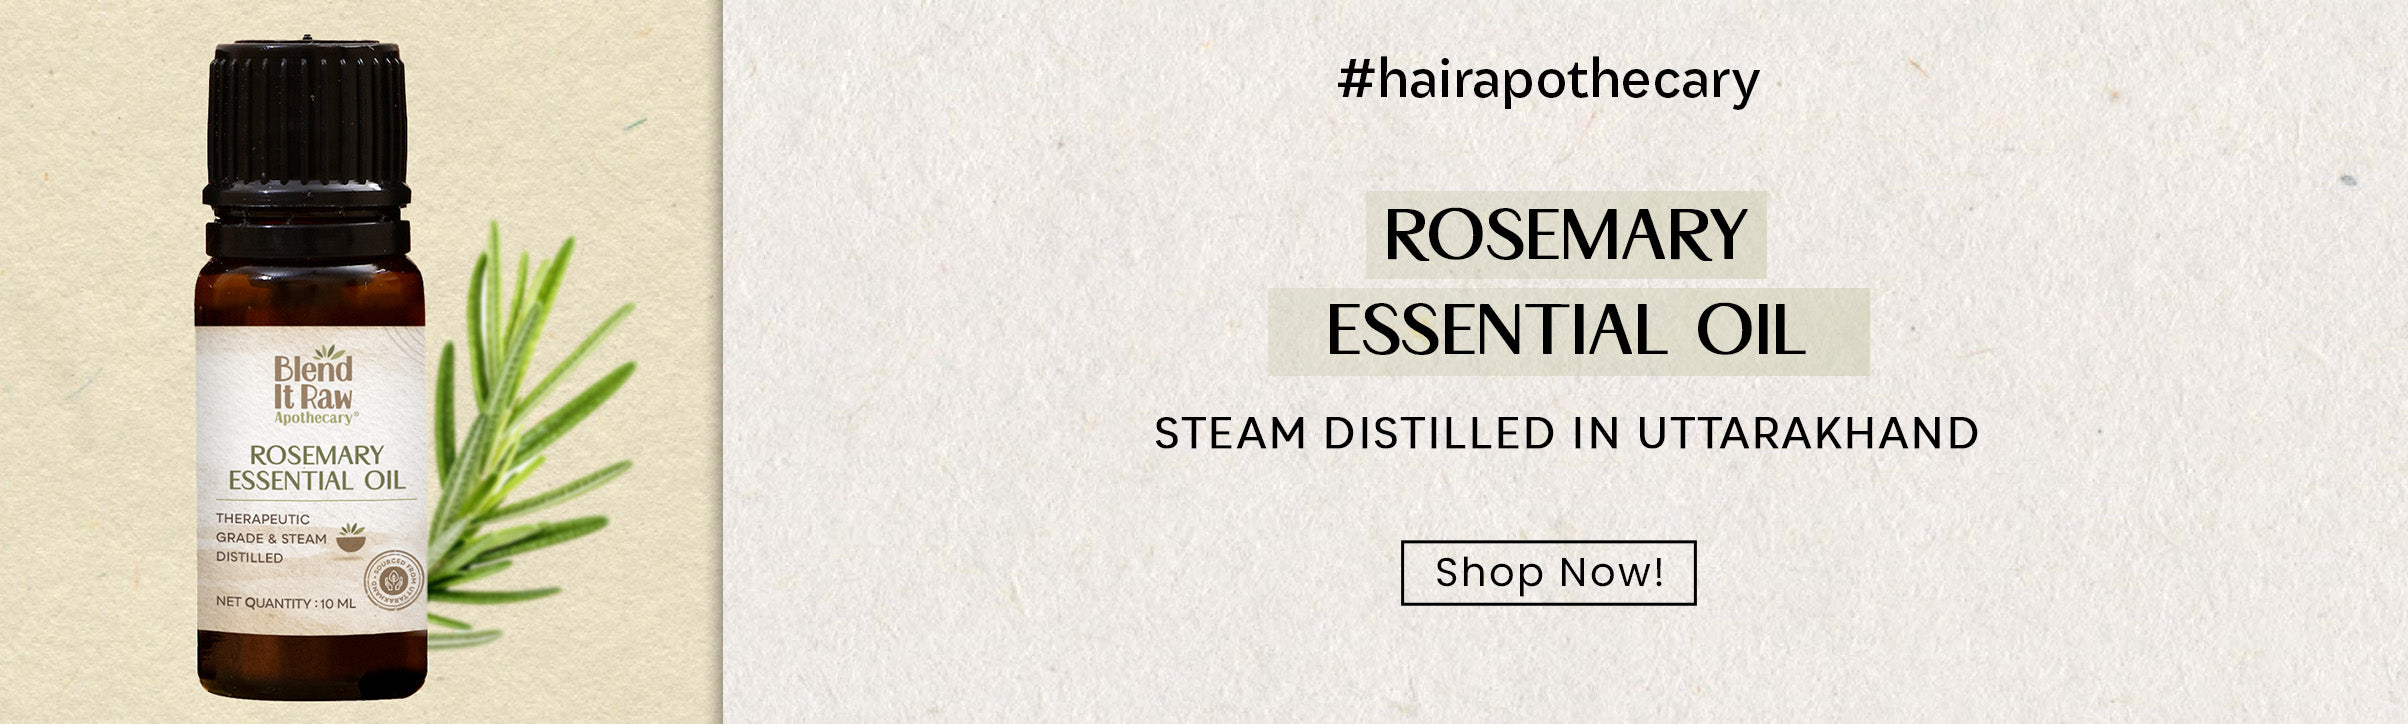 Website banner for rosemary essential oil